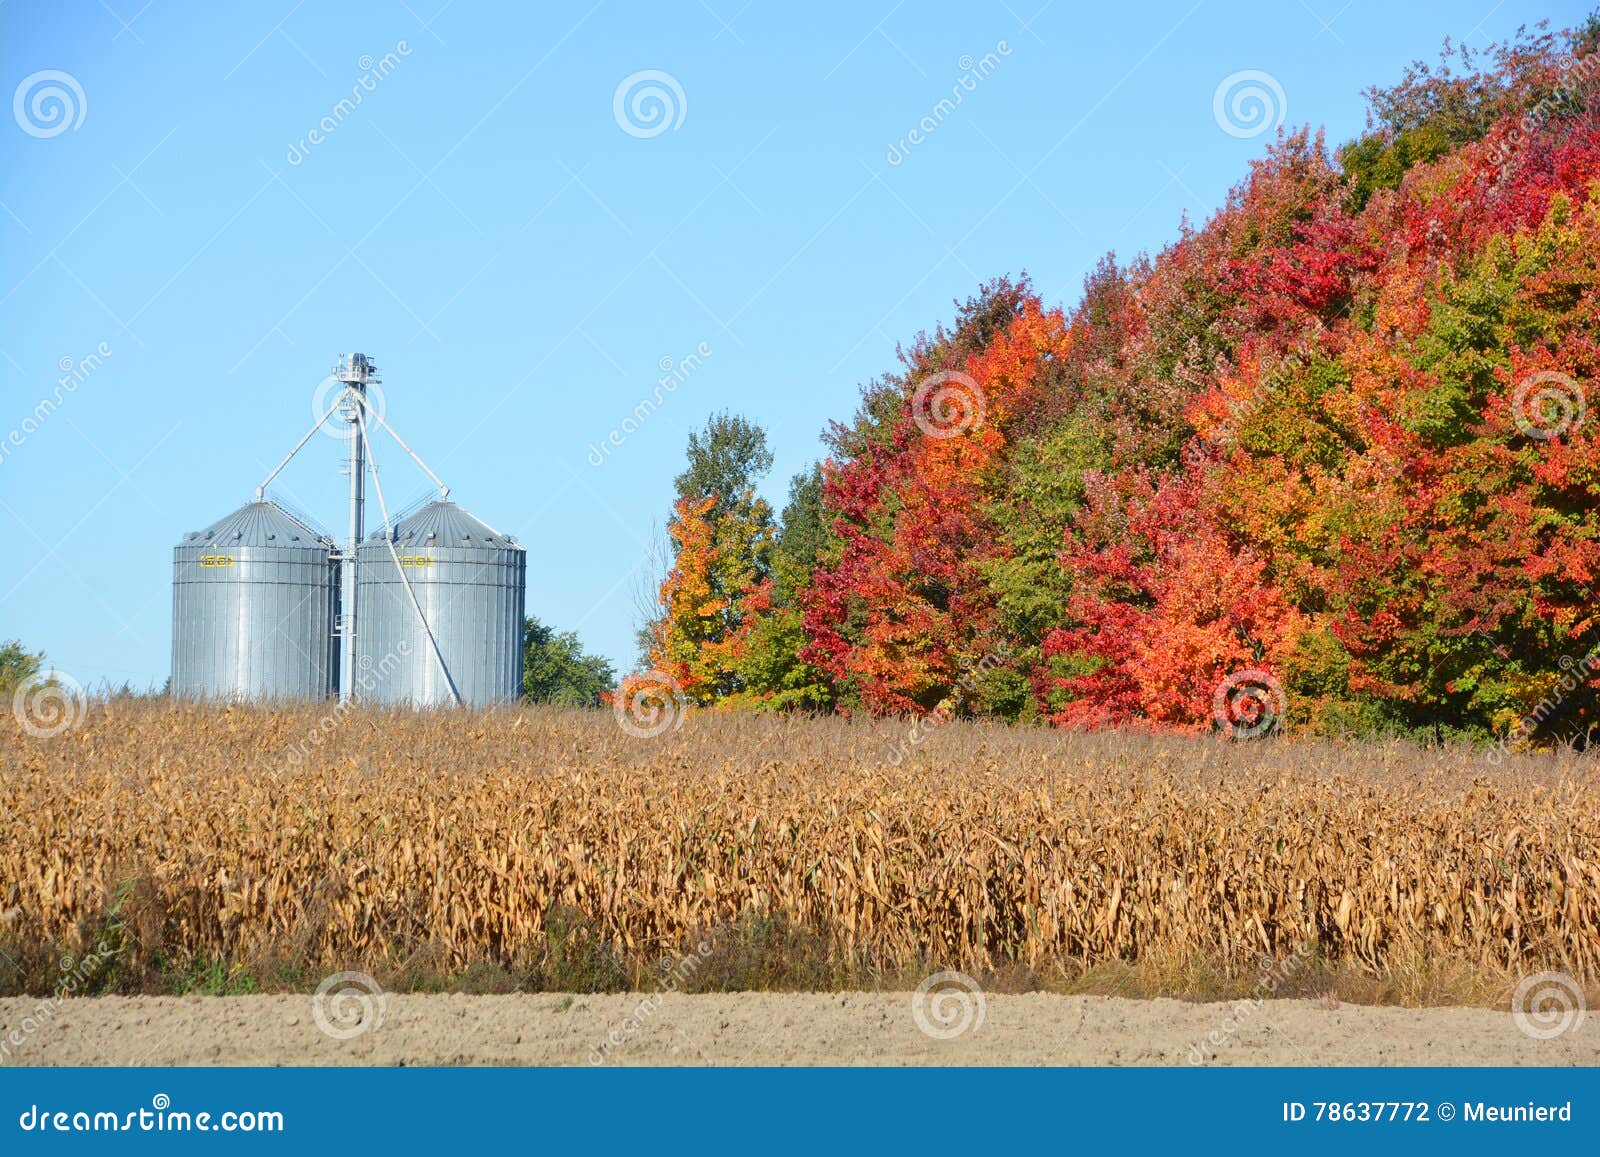 corns farms